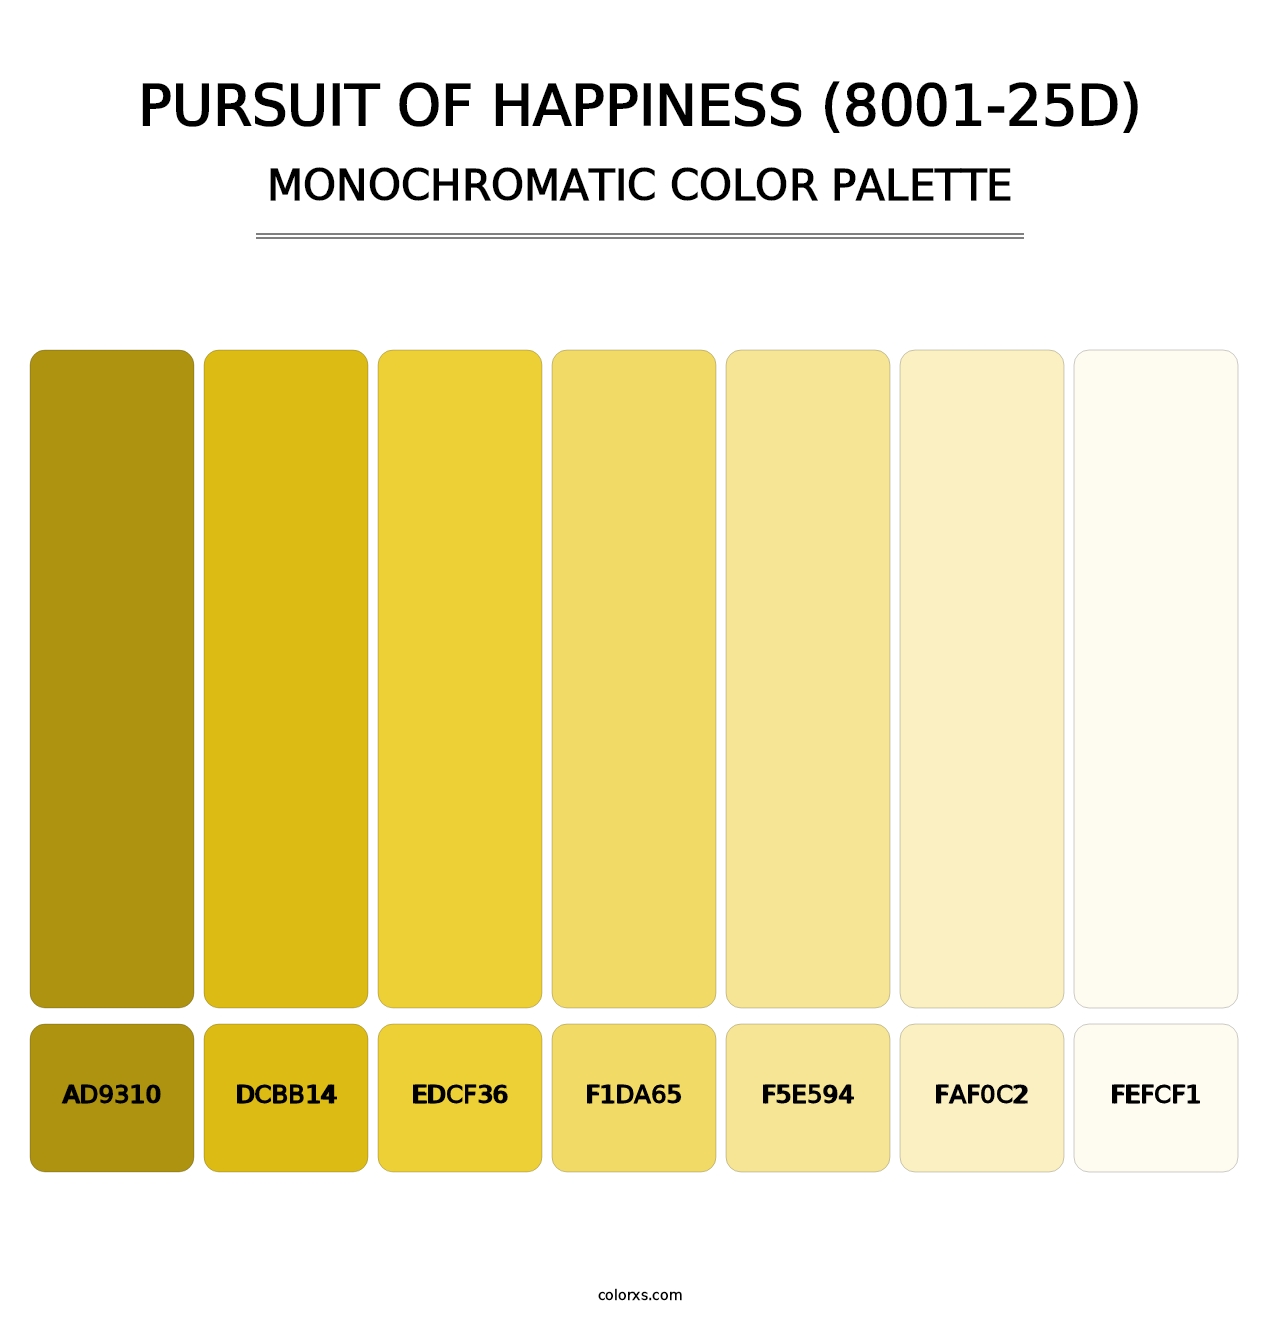 Pursuit of Happiness (8001-25D) - Monochromatic Color Palette